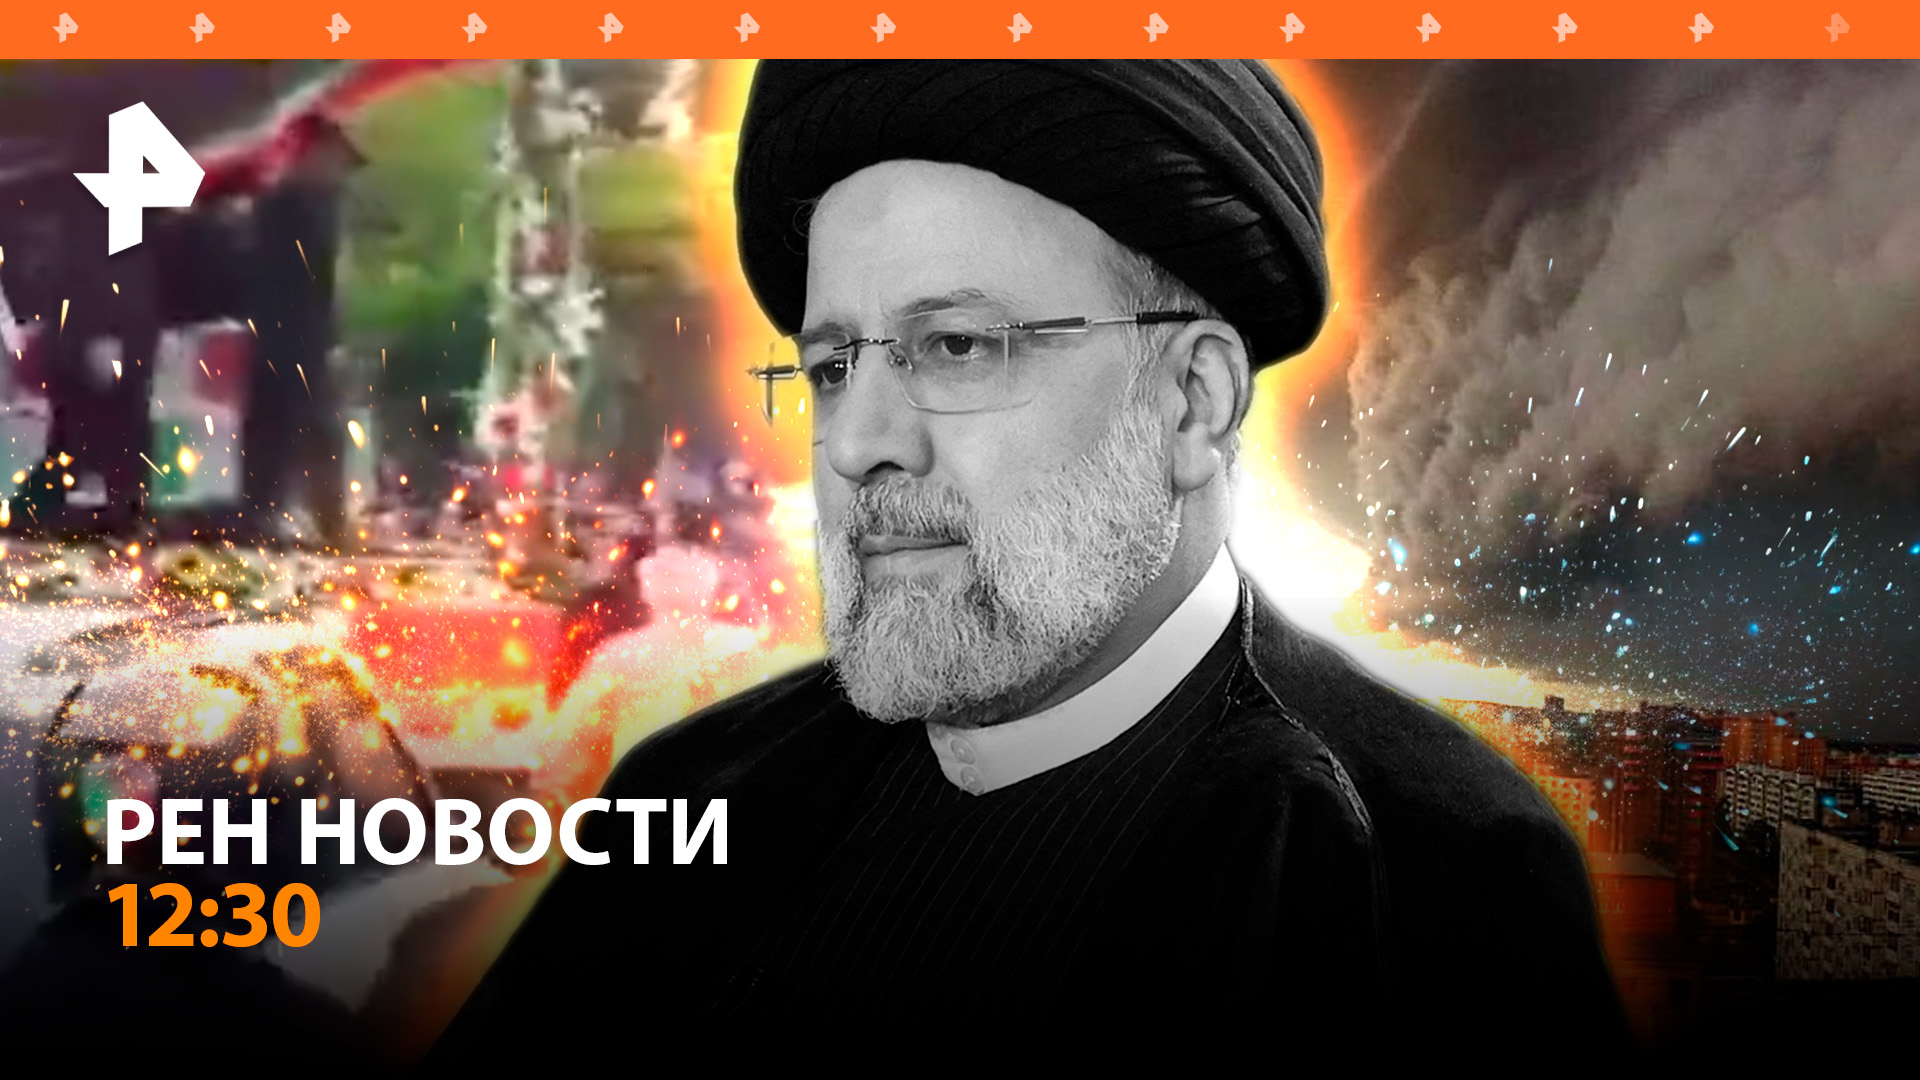 Штормовое предупреждение в Москве / Сотни тысяч прощаются с президентом Ирана / РЕН Новости 21.05